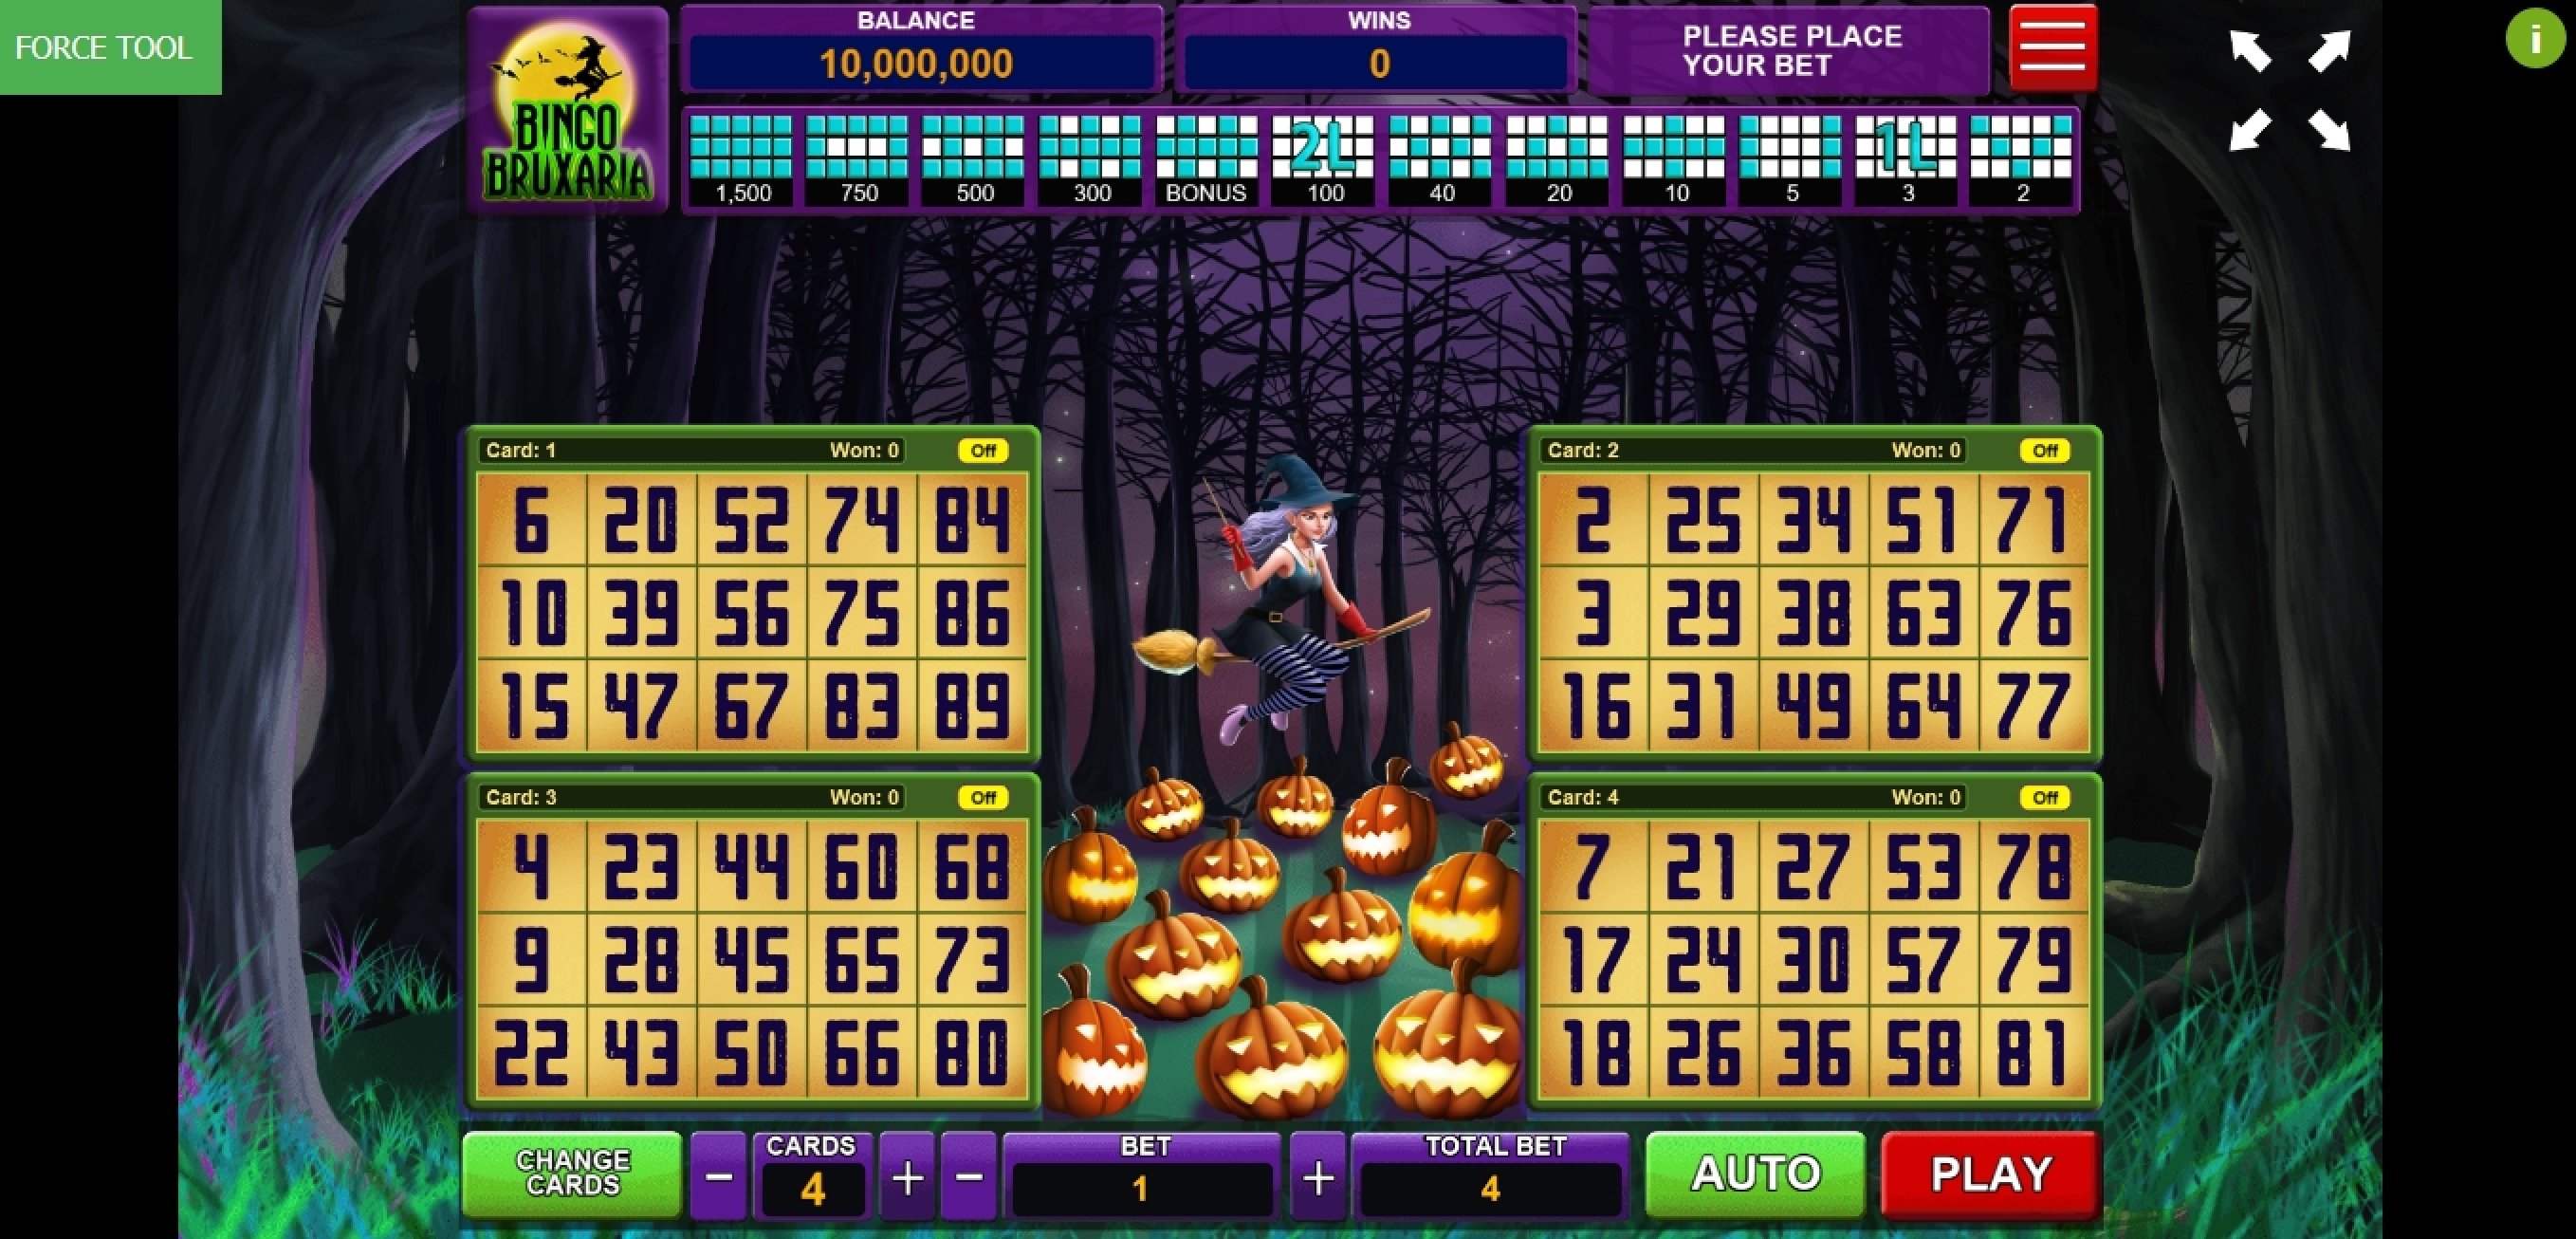 Reels in Bingo Bruxaria Slot Game by Caleta Gaming